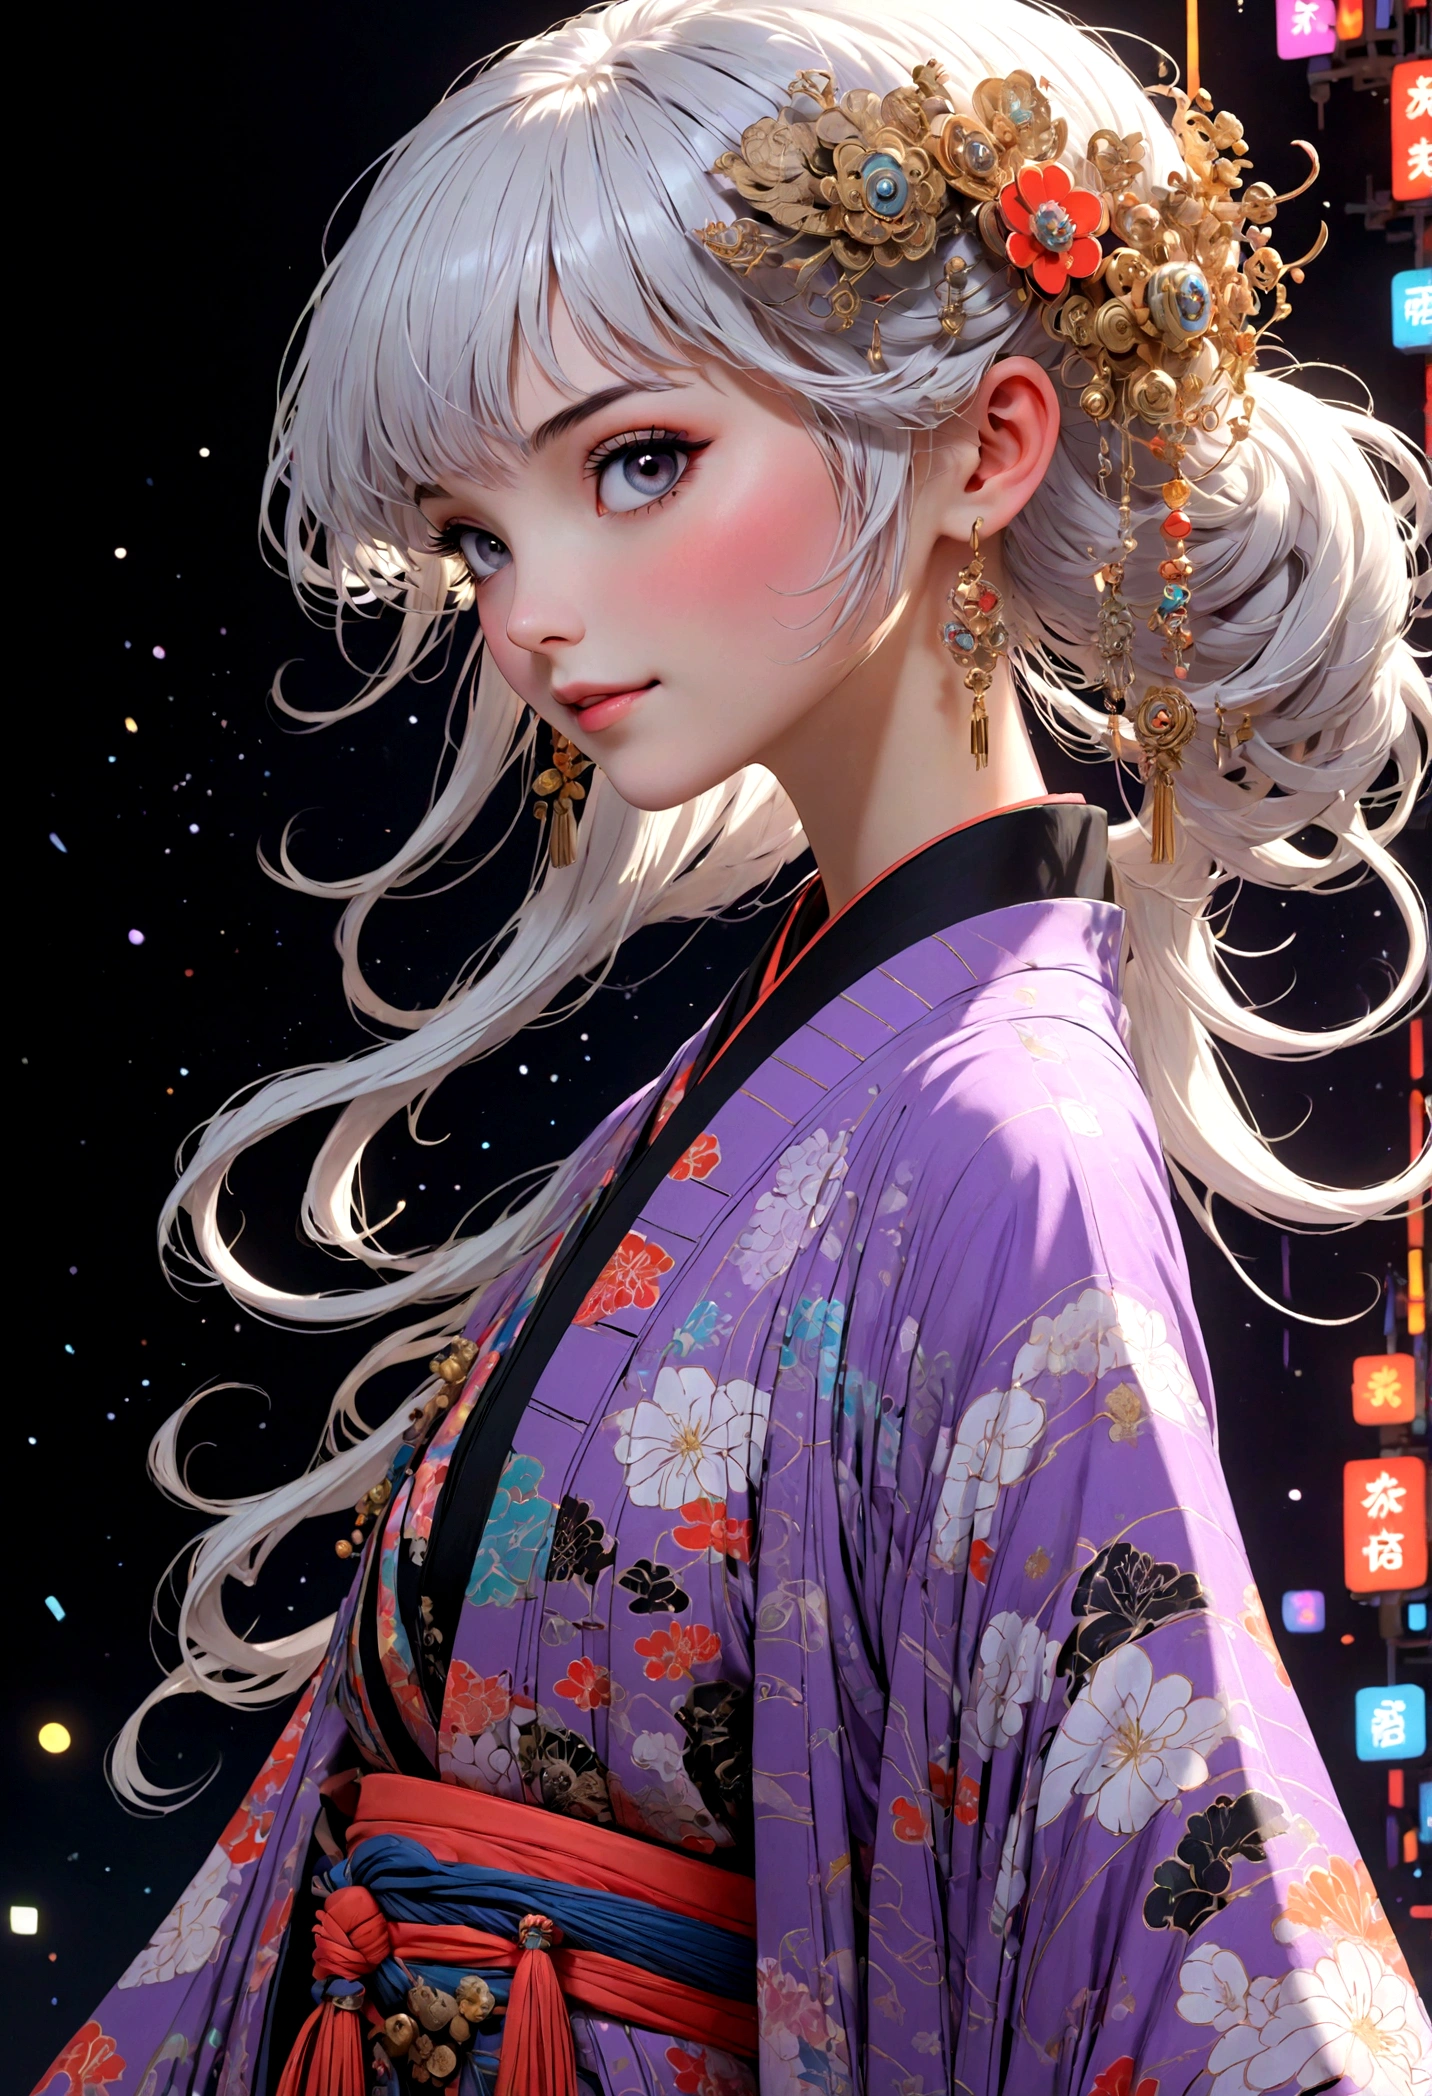 (visage ultra détaillé, détourner le regard:1.3), (Illustration fantastique avec gothique & Ukiyo-e & Bande dessinée), (La scène est vue d&#39;en bas, levant les yeux:1.2), (Tout le corps, Une jeune femme aux cheveux blancs, frange émoussée, Cheveux très longs et ébouriffés, yeux lavande), (Elle défile sur le podium dans une pose audacieuse, souriant et portant une tenue avant-gardiste, kimono japonais futuriste de couleur néon), (En arrière-plan, sa silhouette sous différents angles est projetée sur un écran par projection mapping. Le lieu du défilé de mode est rempli de lumières de différentes couleurs qui flottent)